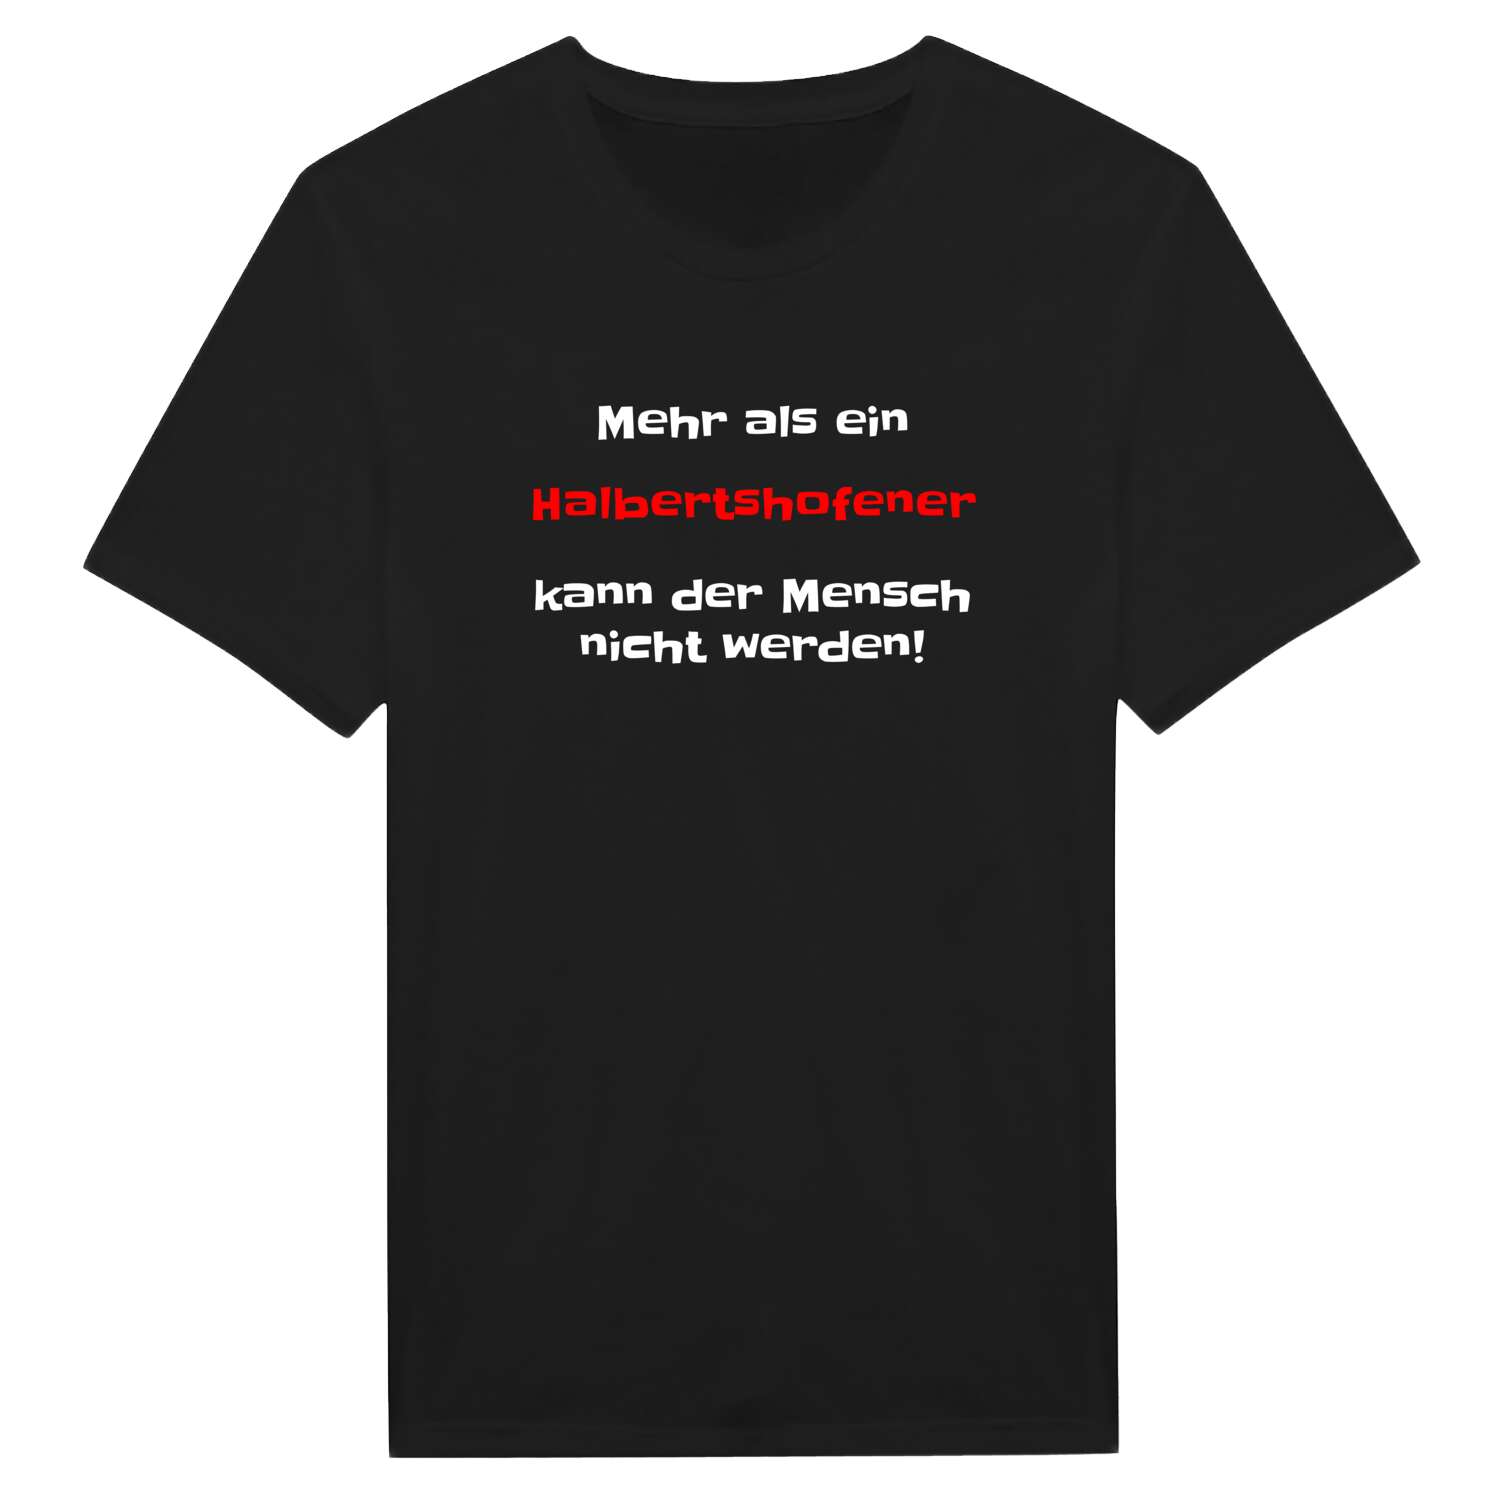 Halbertshofen T-Shirt »Mehr als ein«